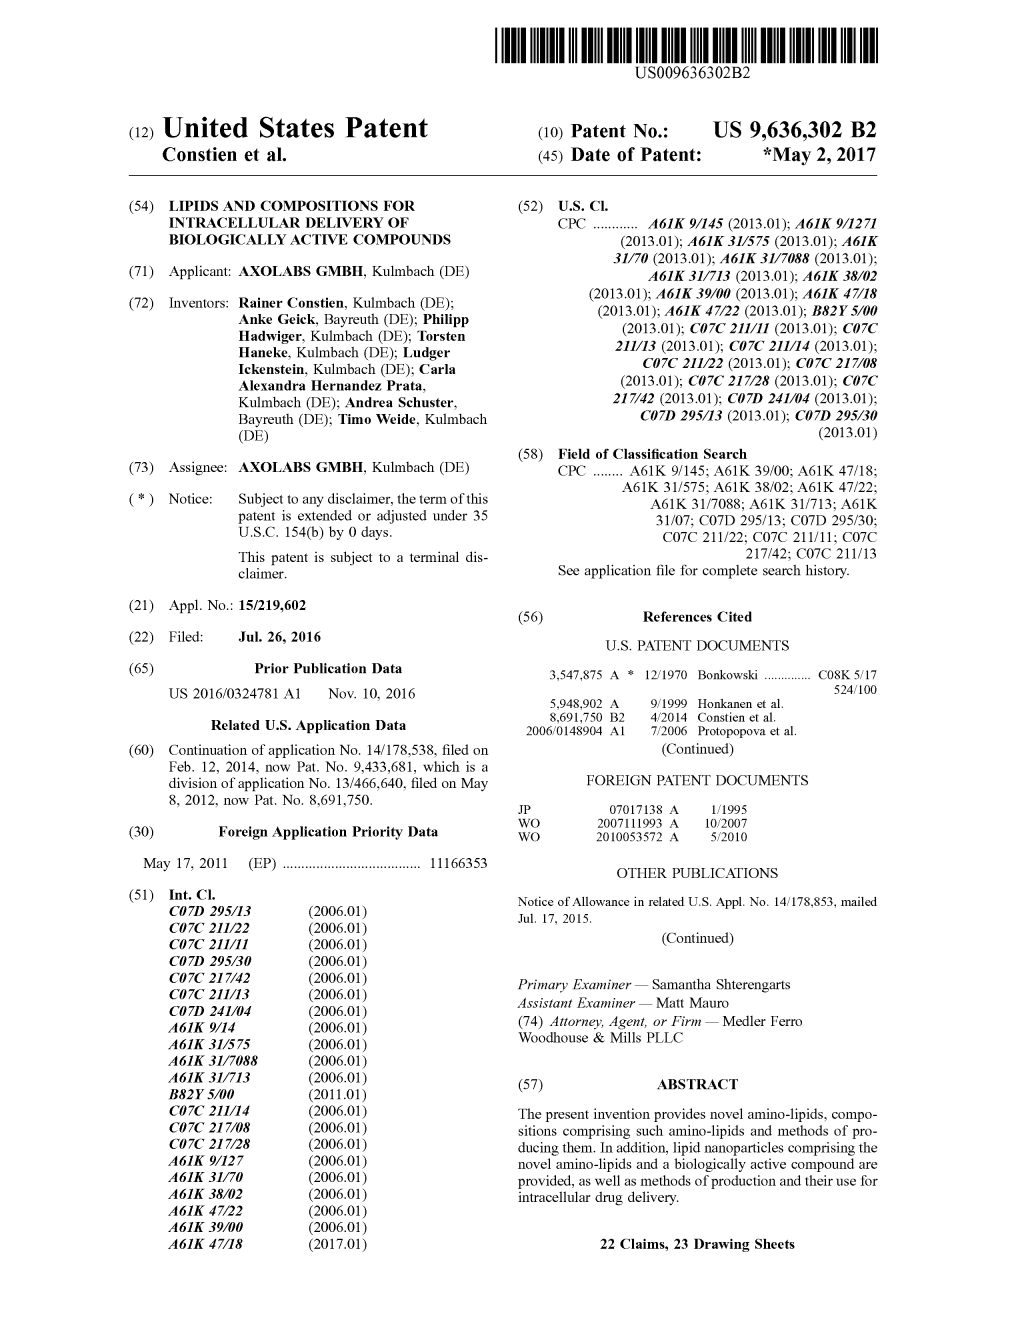 (12) United States Patent (10) Patent No.: US 9,636,302 B2 Constien Et Al